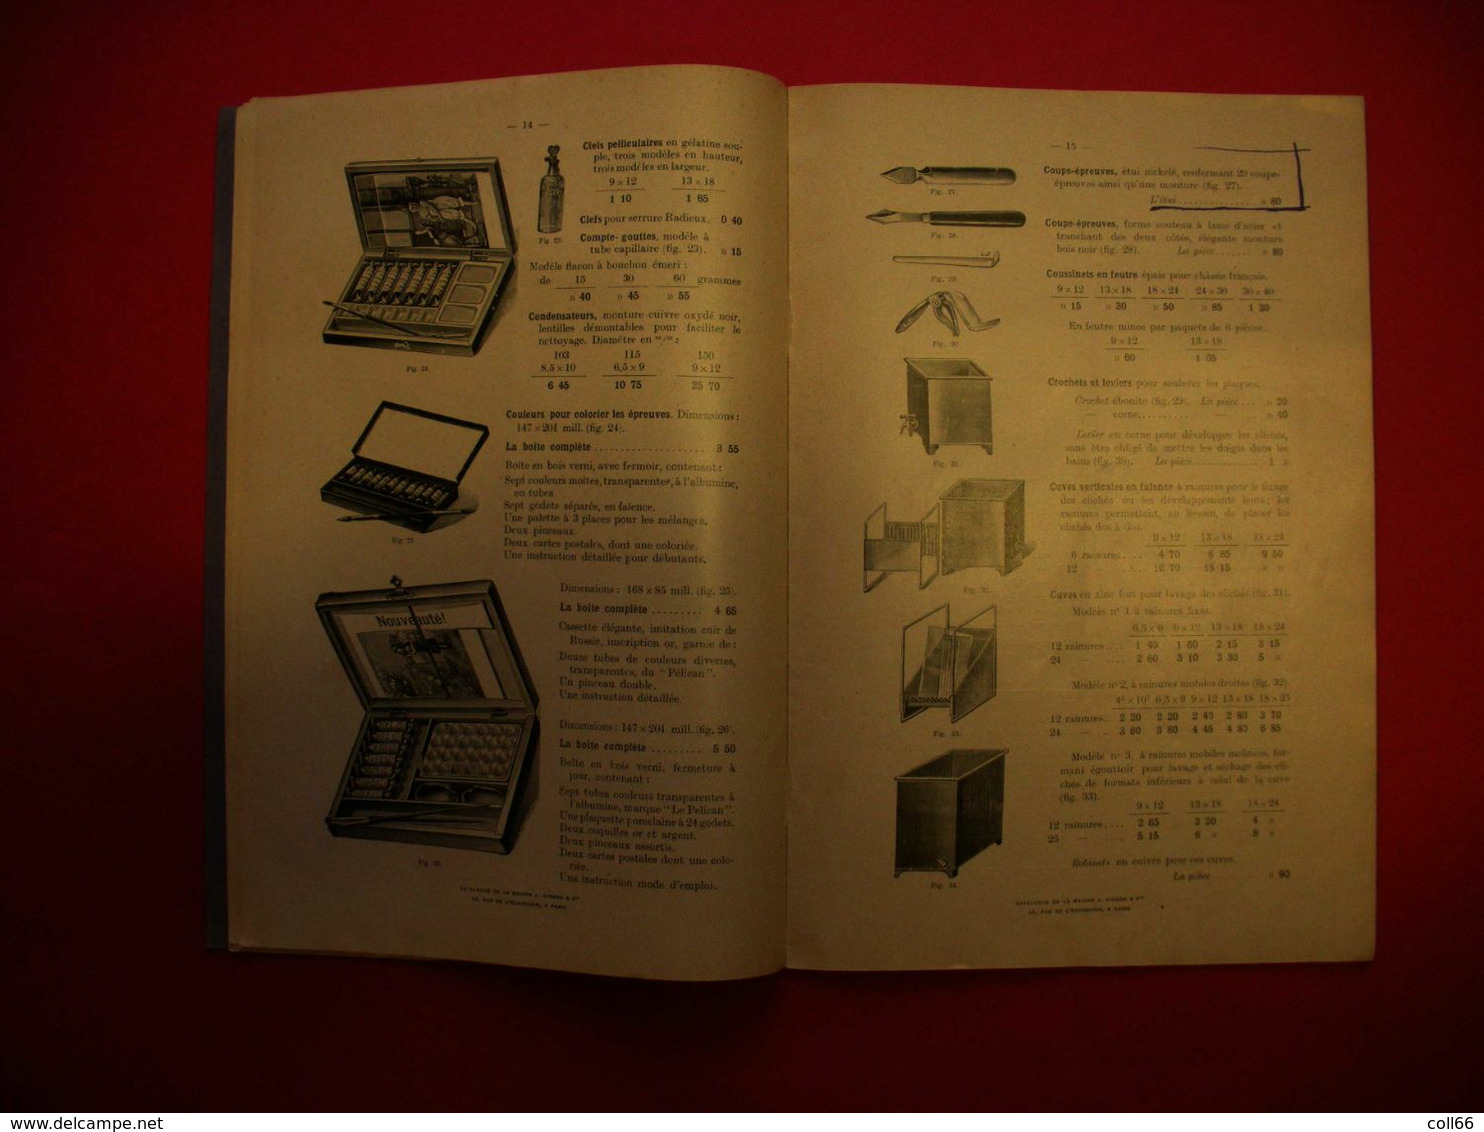 Catalogue détaillé Tarif et Produits et Accessoires Photographiques J.Girard & Cie nombreuses illustrations 18.5x27.5cms